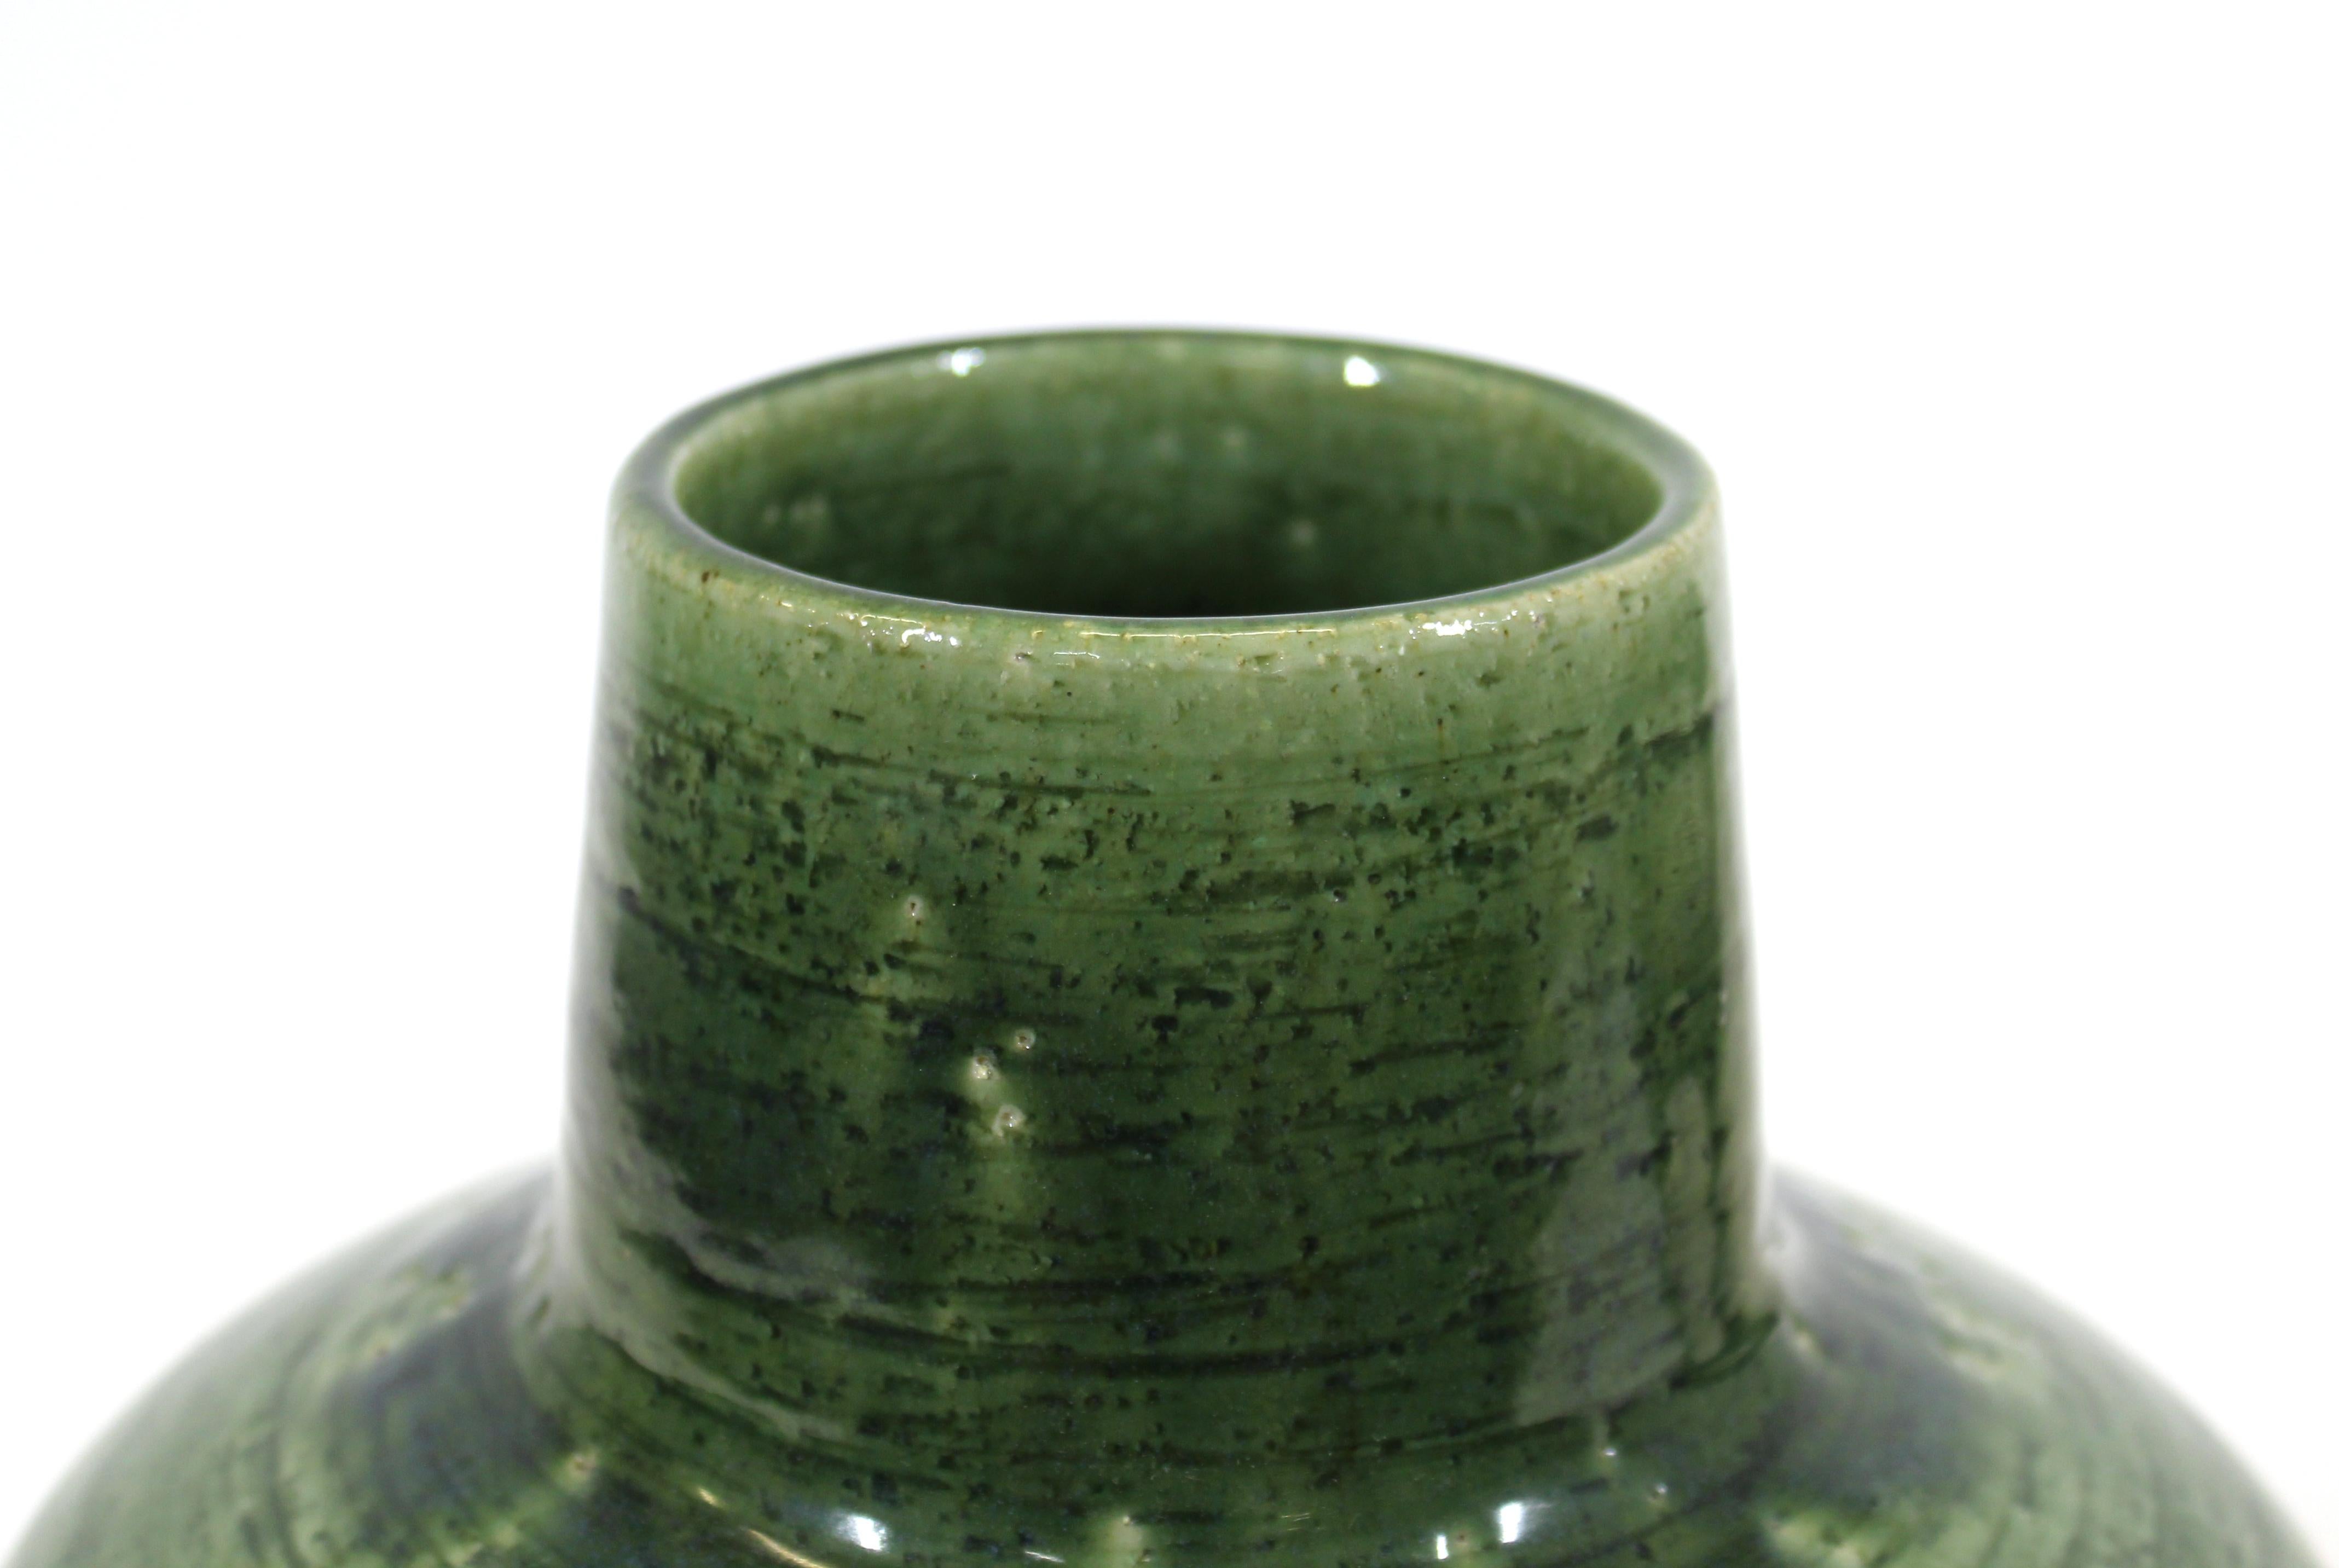 20th Century Per Linnemann-Schmidt for Palshus Danish Modern Green Glaze Ceramic Vase